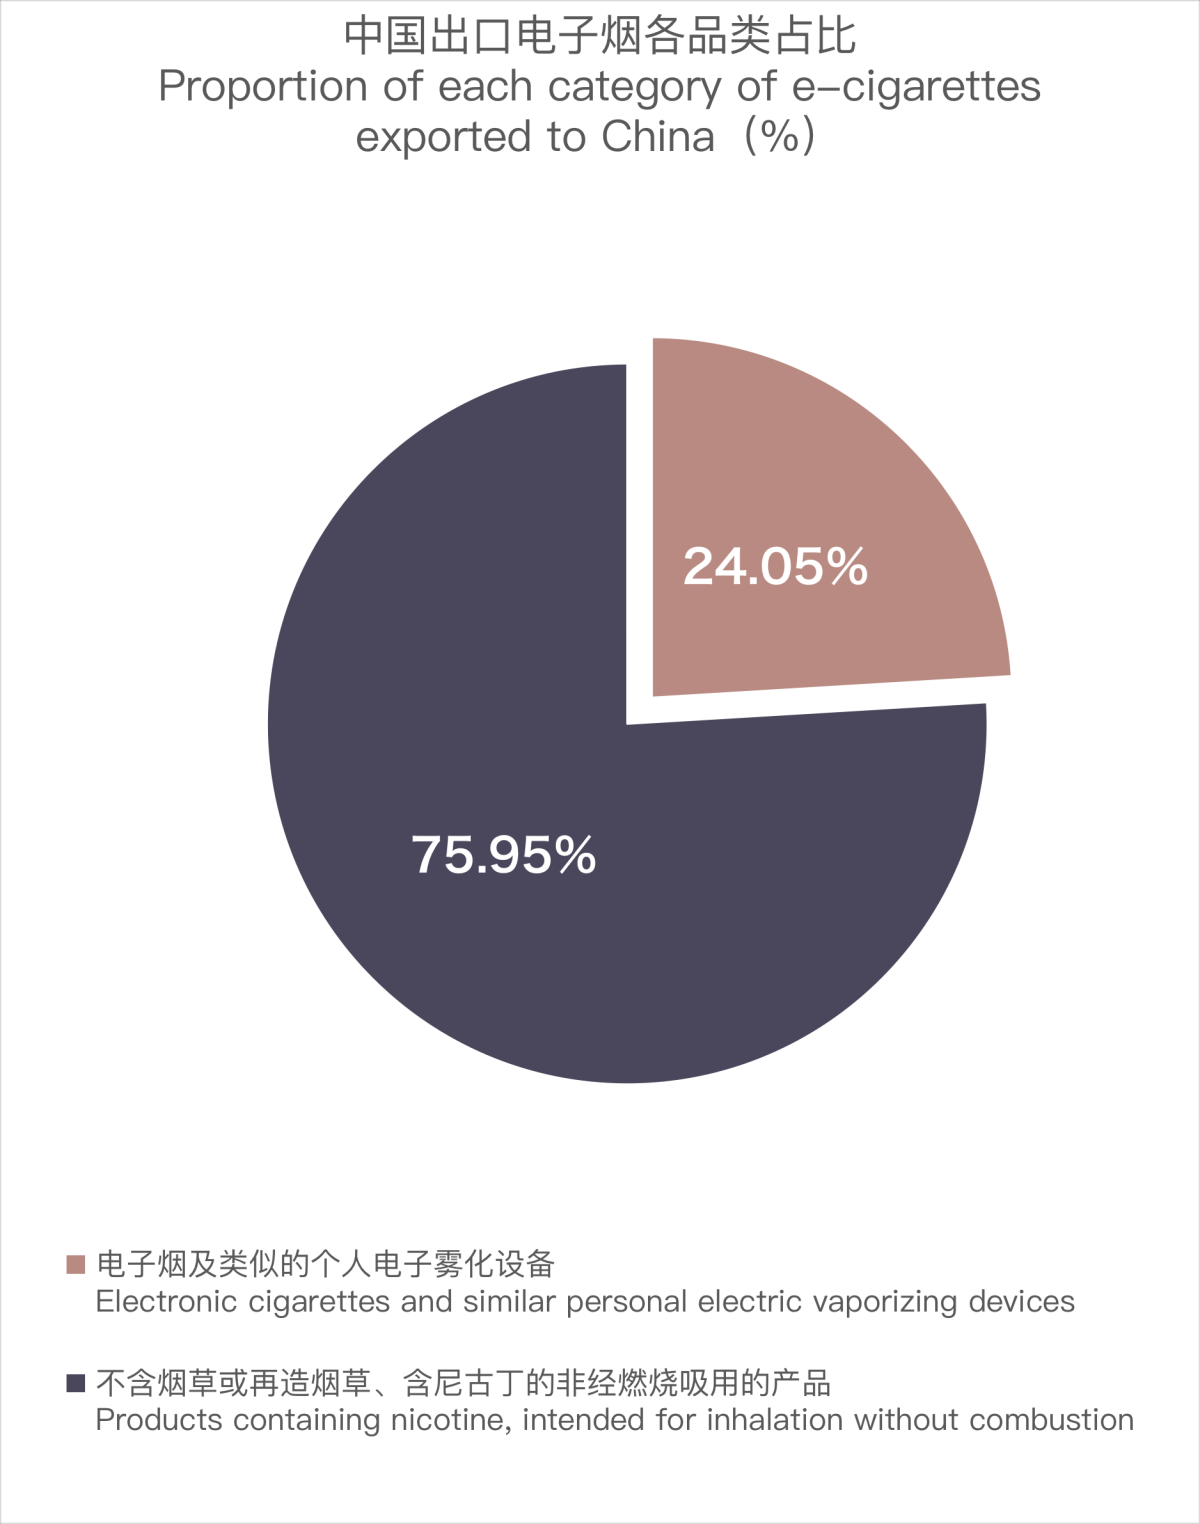 2月中国出口瑞士电子烟约208万美元 环比下降60.47%